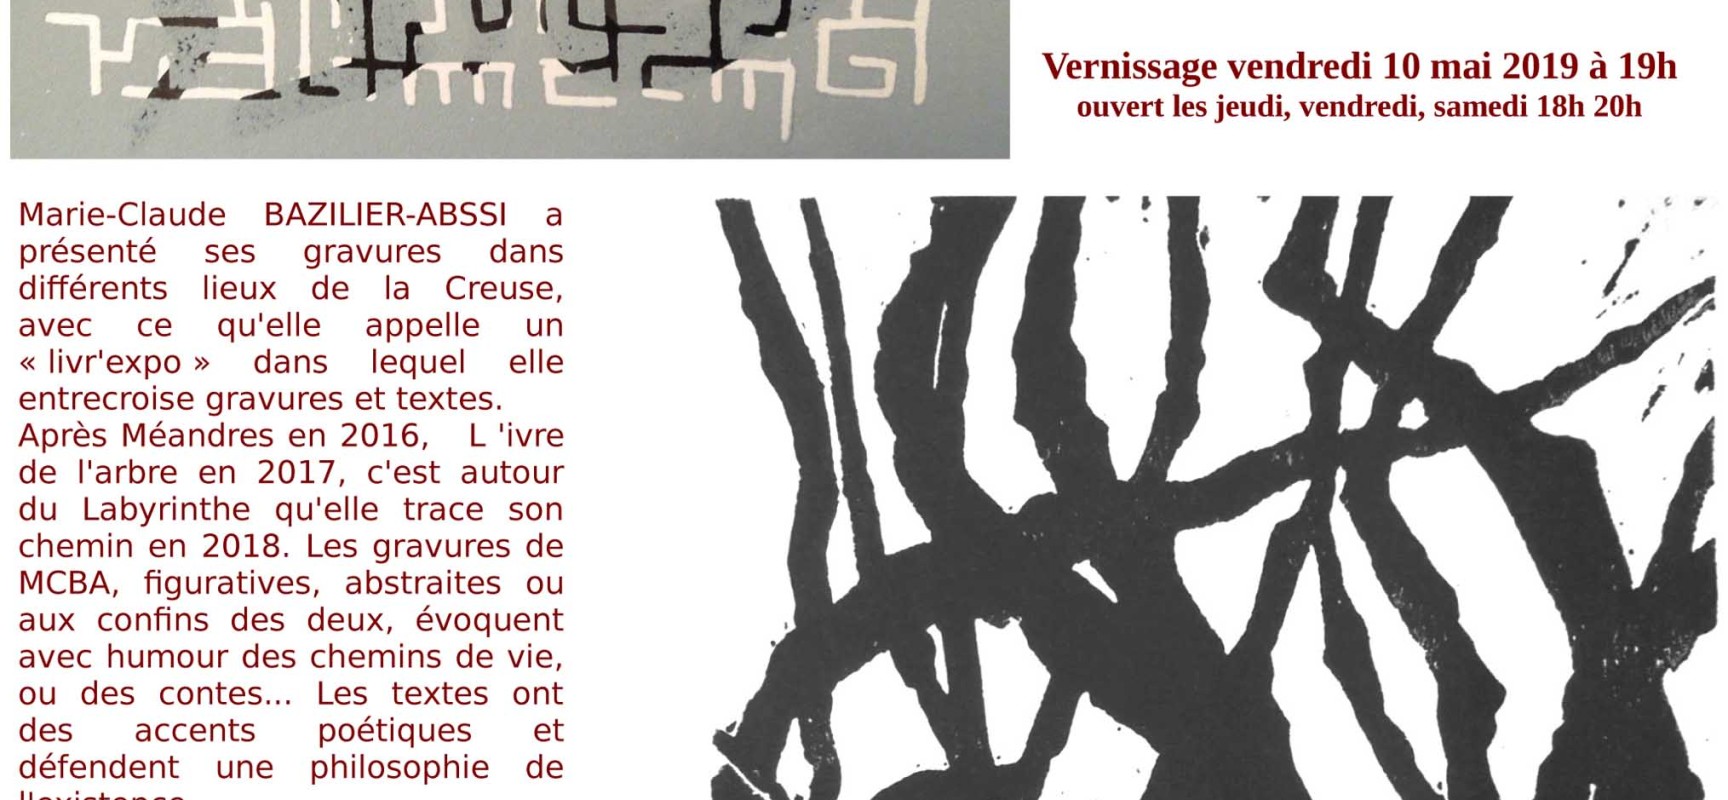 EXPOSITION – Gravures / Marie-Claude BAZILIER-ABSSI #FabuleuxDestin #Aubusson